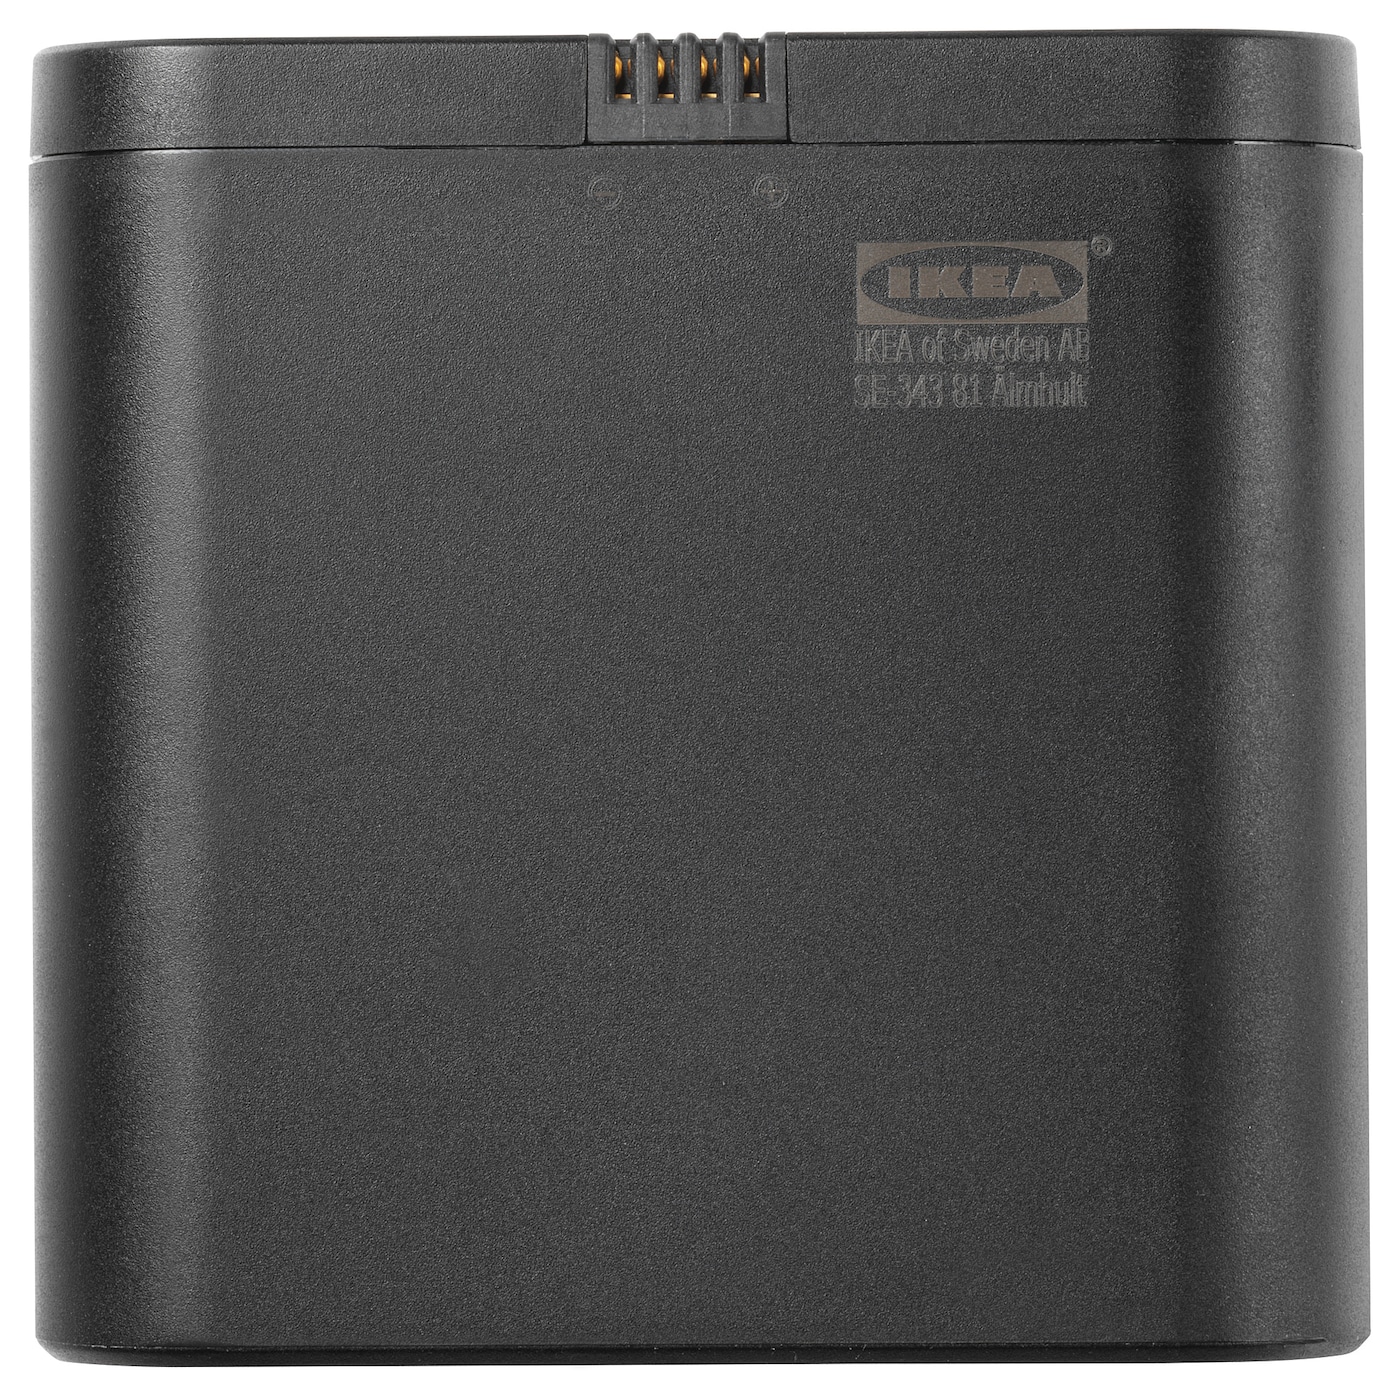 Аккумулятор для bluetooth-колонки - ENEBY IKEA/ ЭНЭБИ ИКЕА,  7,9х7,7 см, черный